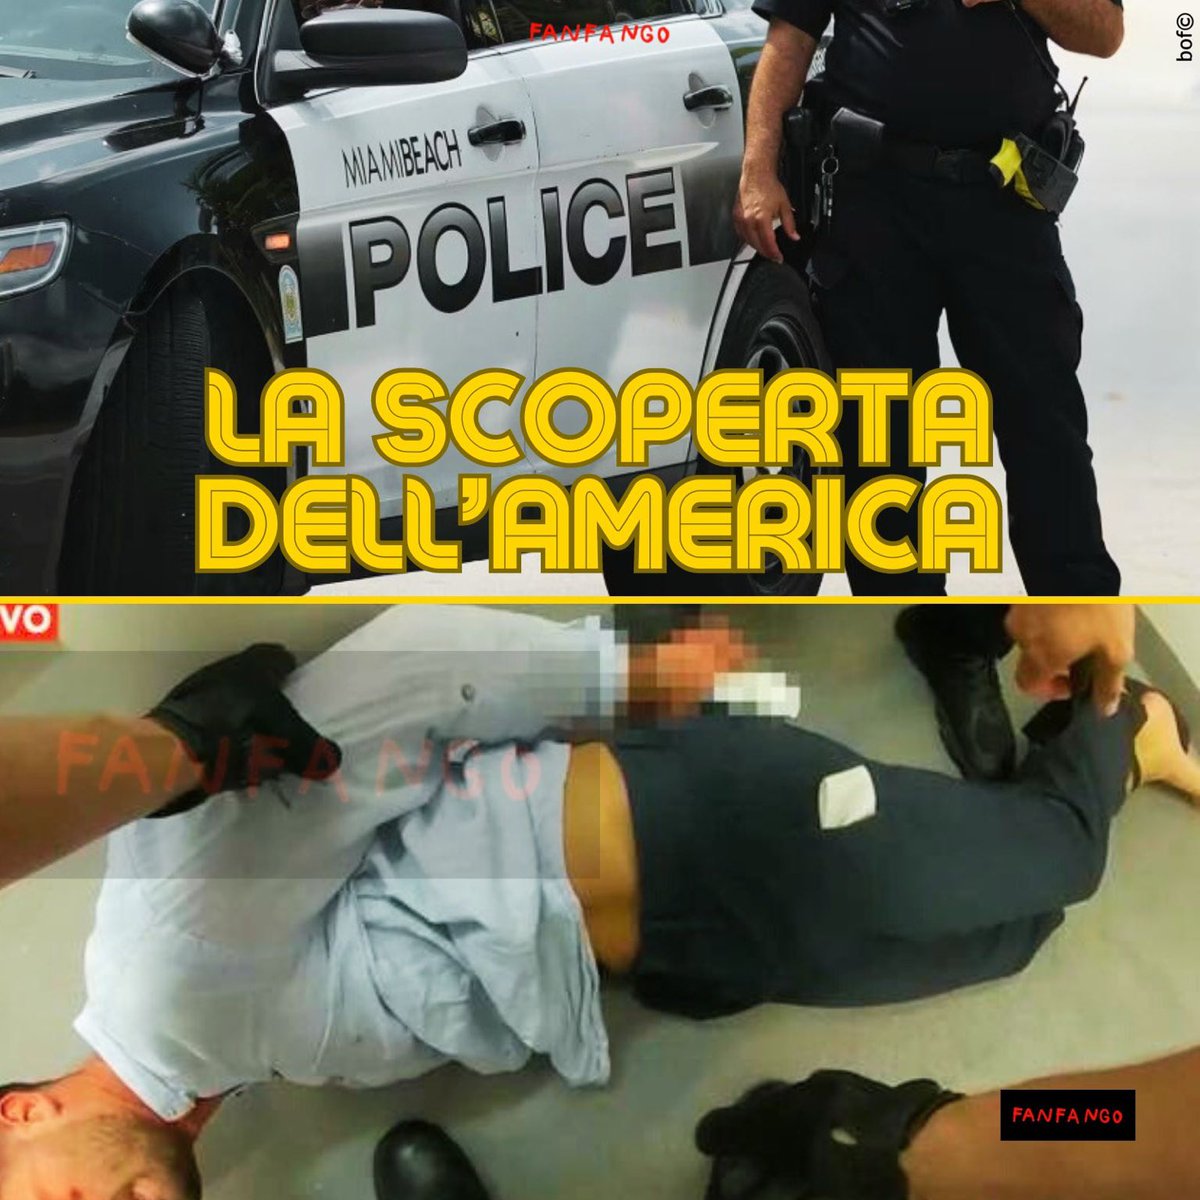 Miami? Ma quanto Miami? #miami #arrestato #italiano #miamipolice #statiuniti #america #italia #italiani #poliziaitaliana #differenze #fanfango #satira #satirapolitica #parodia #meme #memeita #memeitalia #lascopertadellamerica #humanrights #italianiallestero